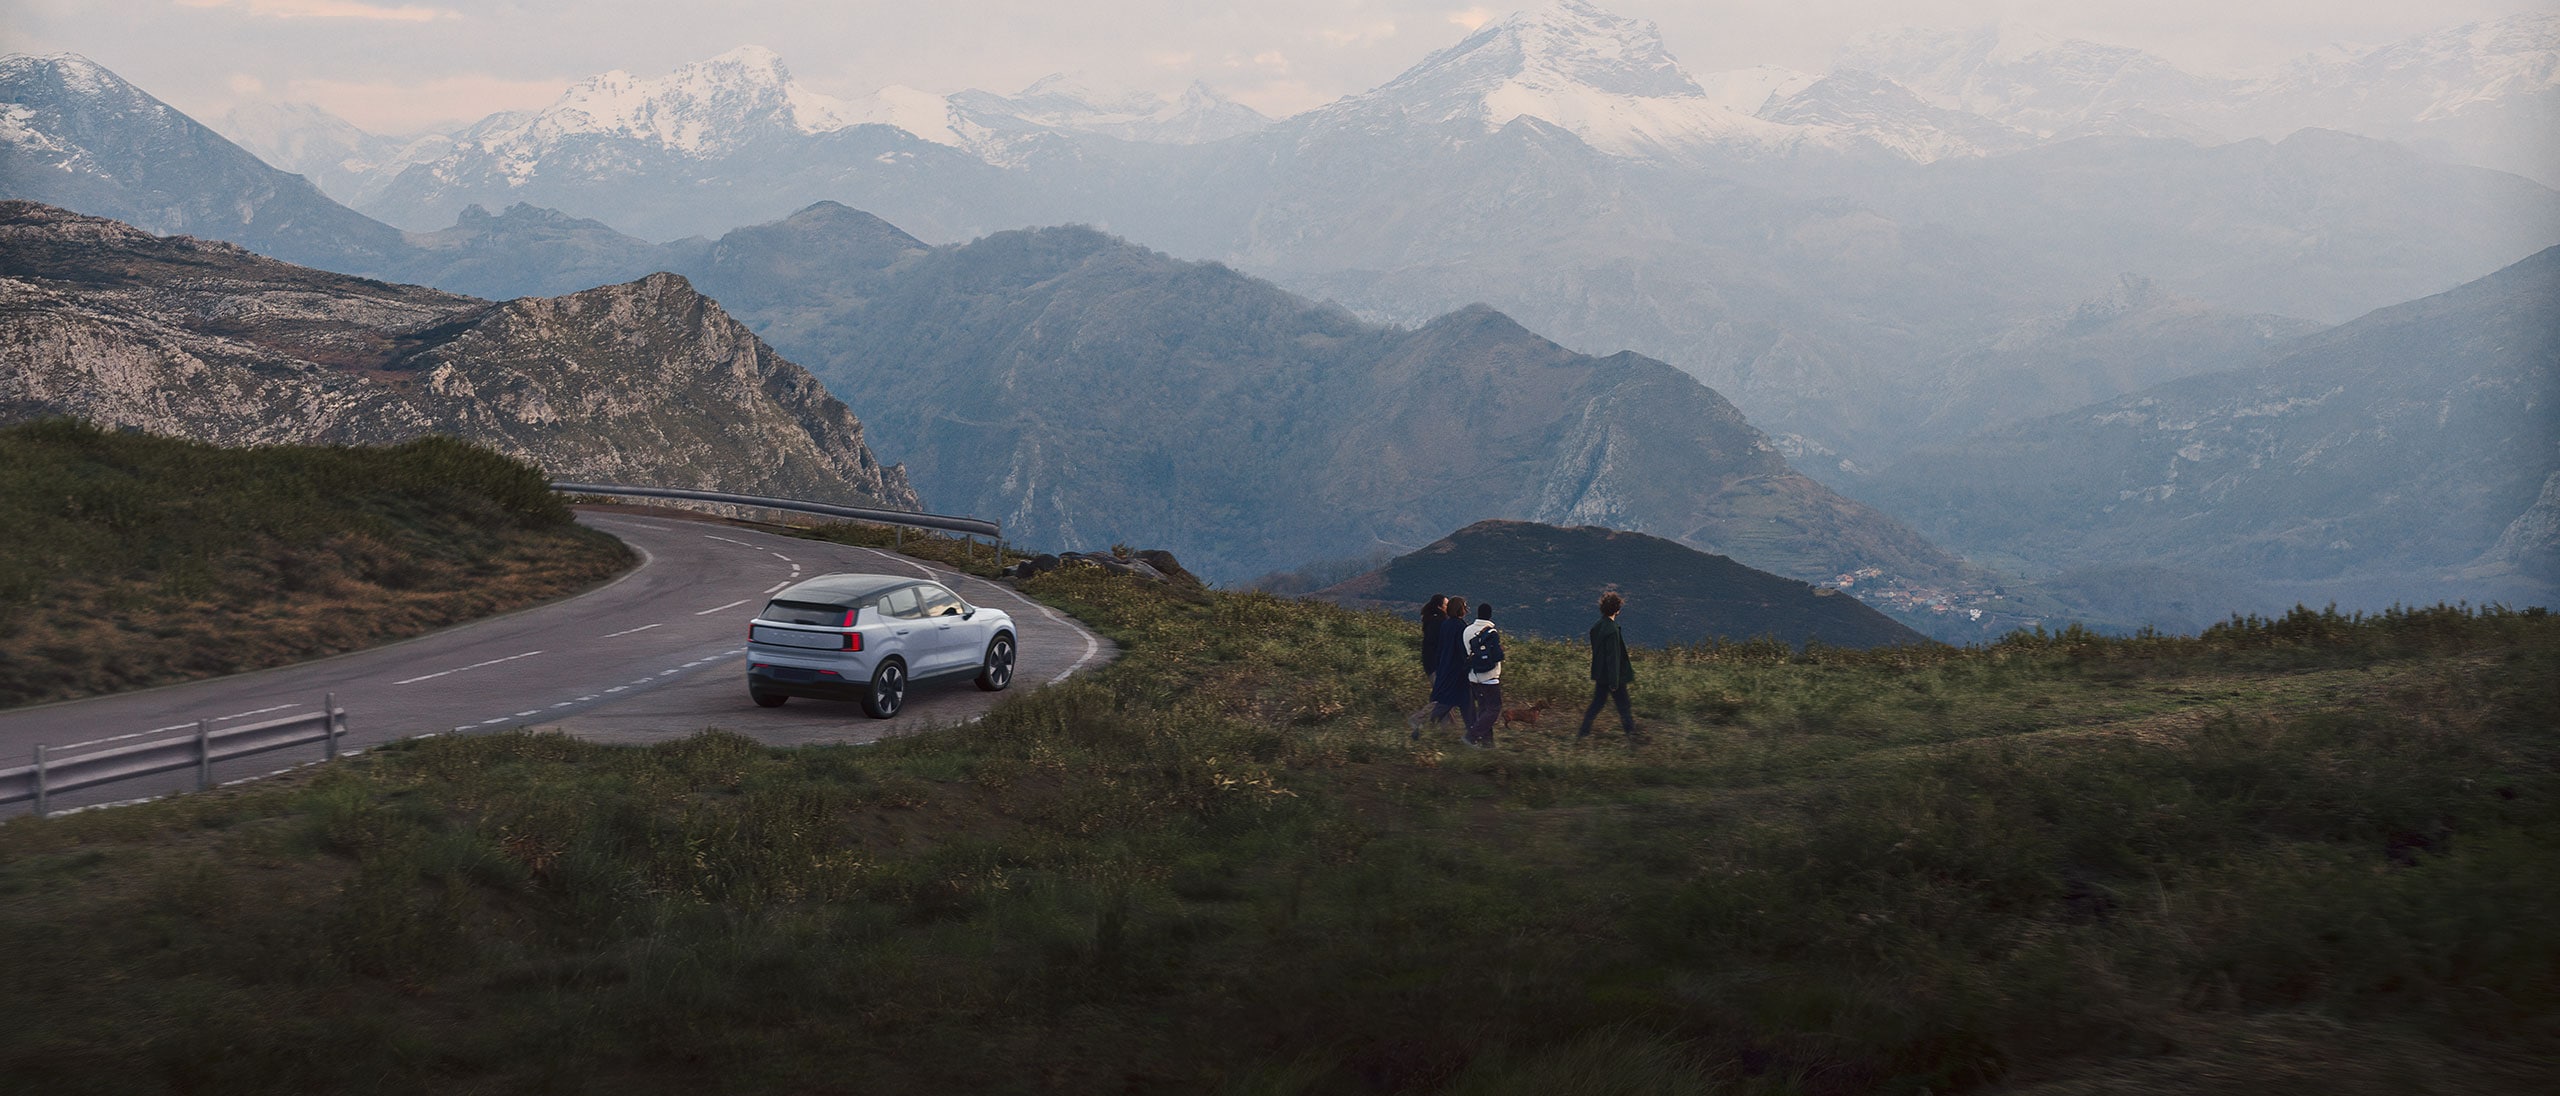 Plně elektrický vůz Volvo zaparkovaný na pozadí krásné horské krajiny.